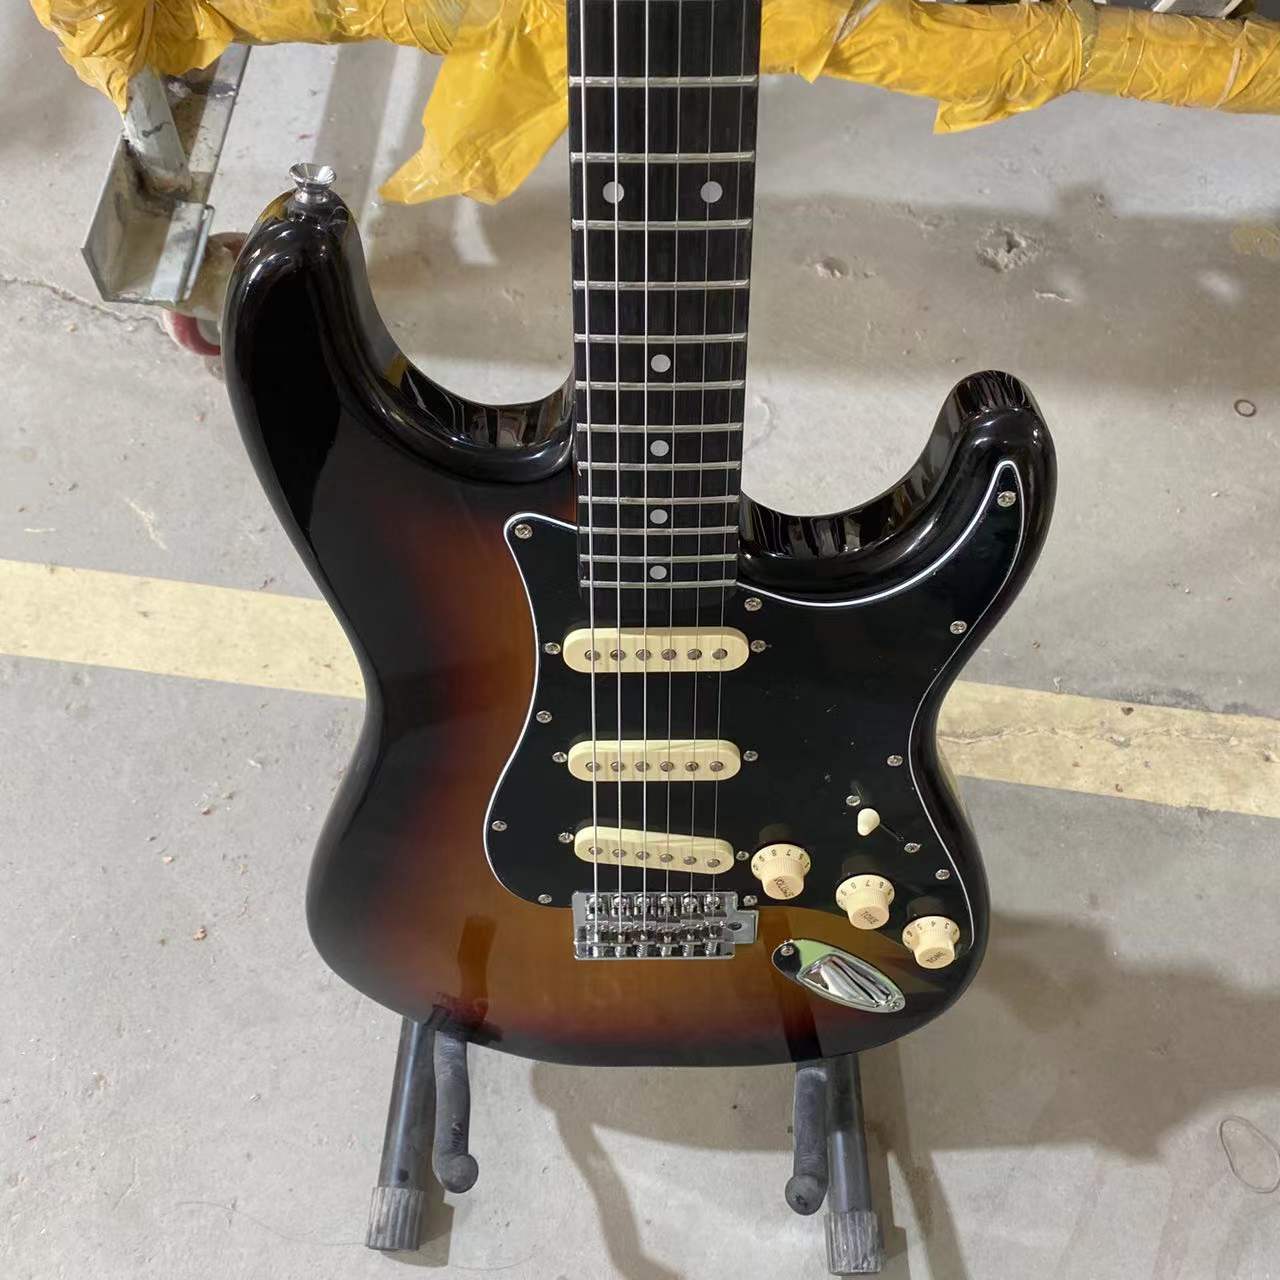 ST версия электрическая винтажная гитара цвета Sunburst Elder Wood Body черная накладка хромированная фурнитура высокое качество гитара Бесплатная доставка